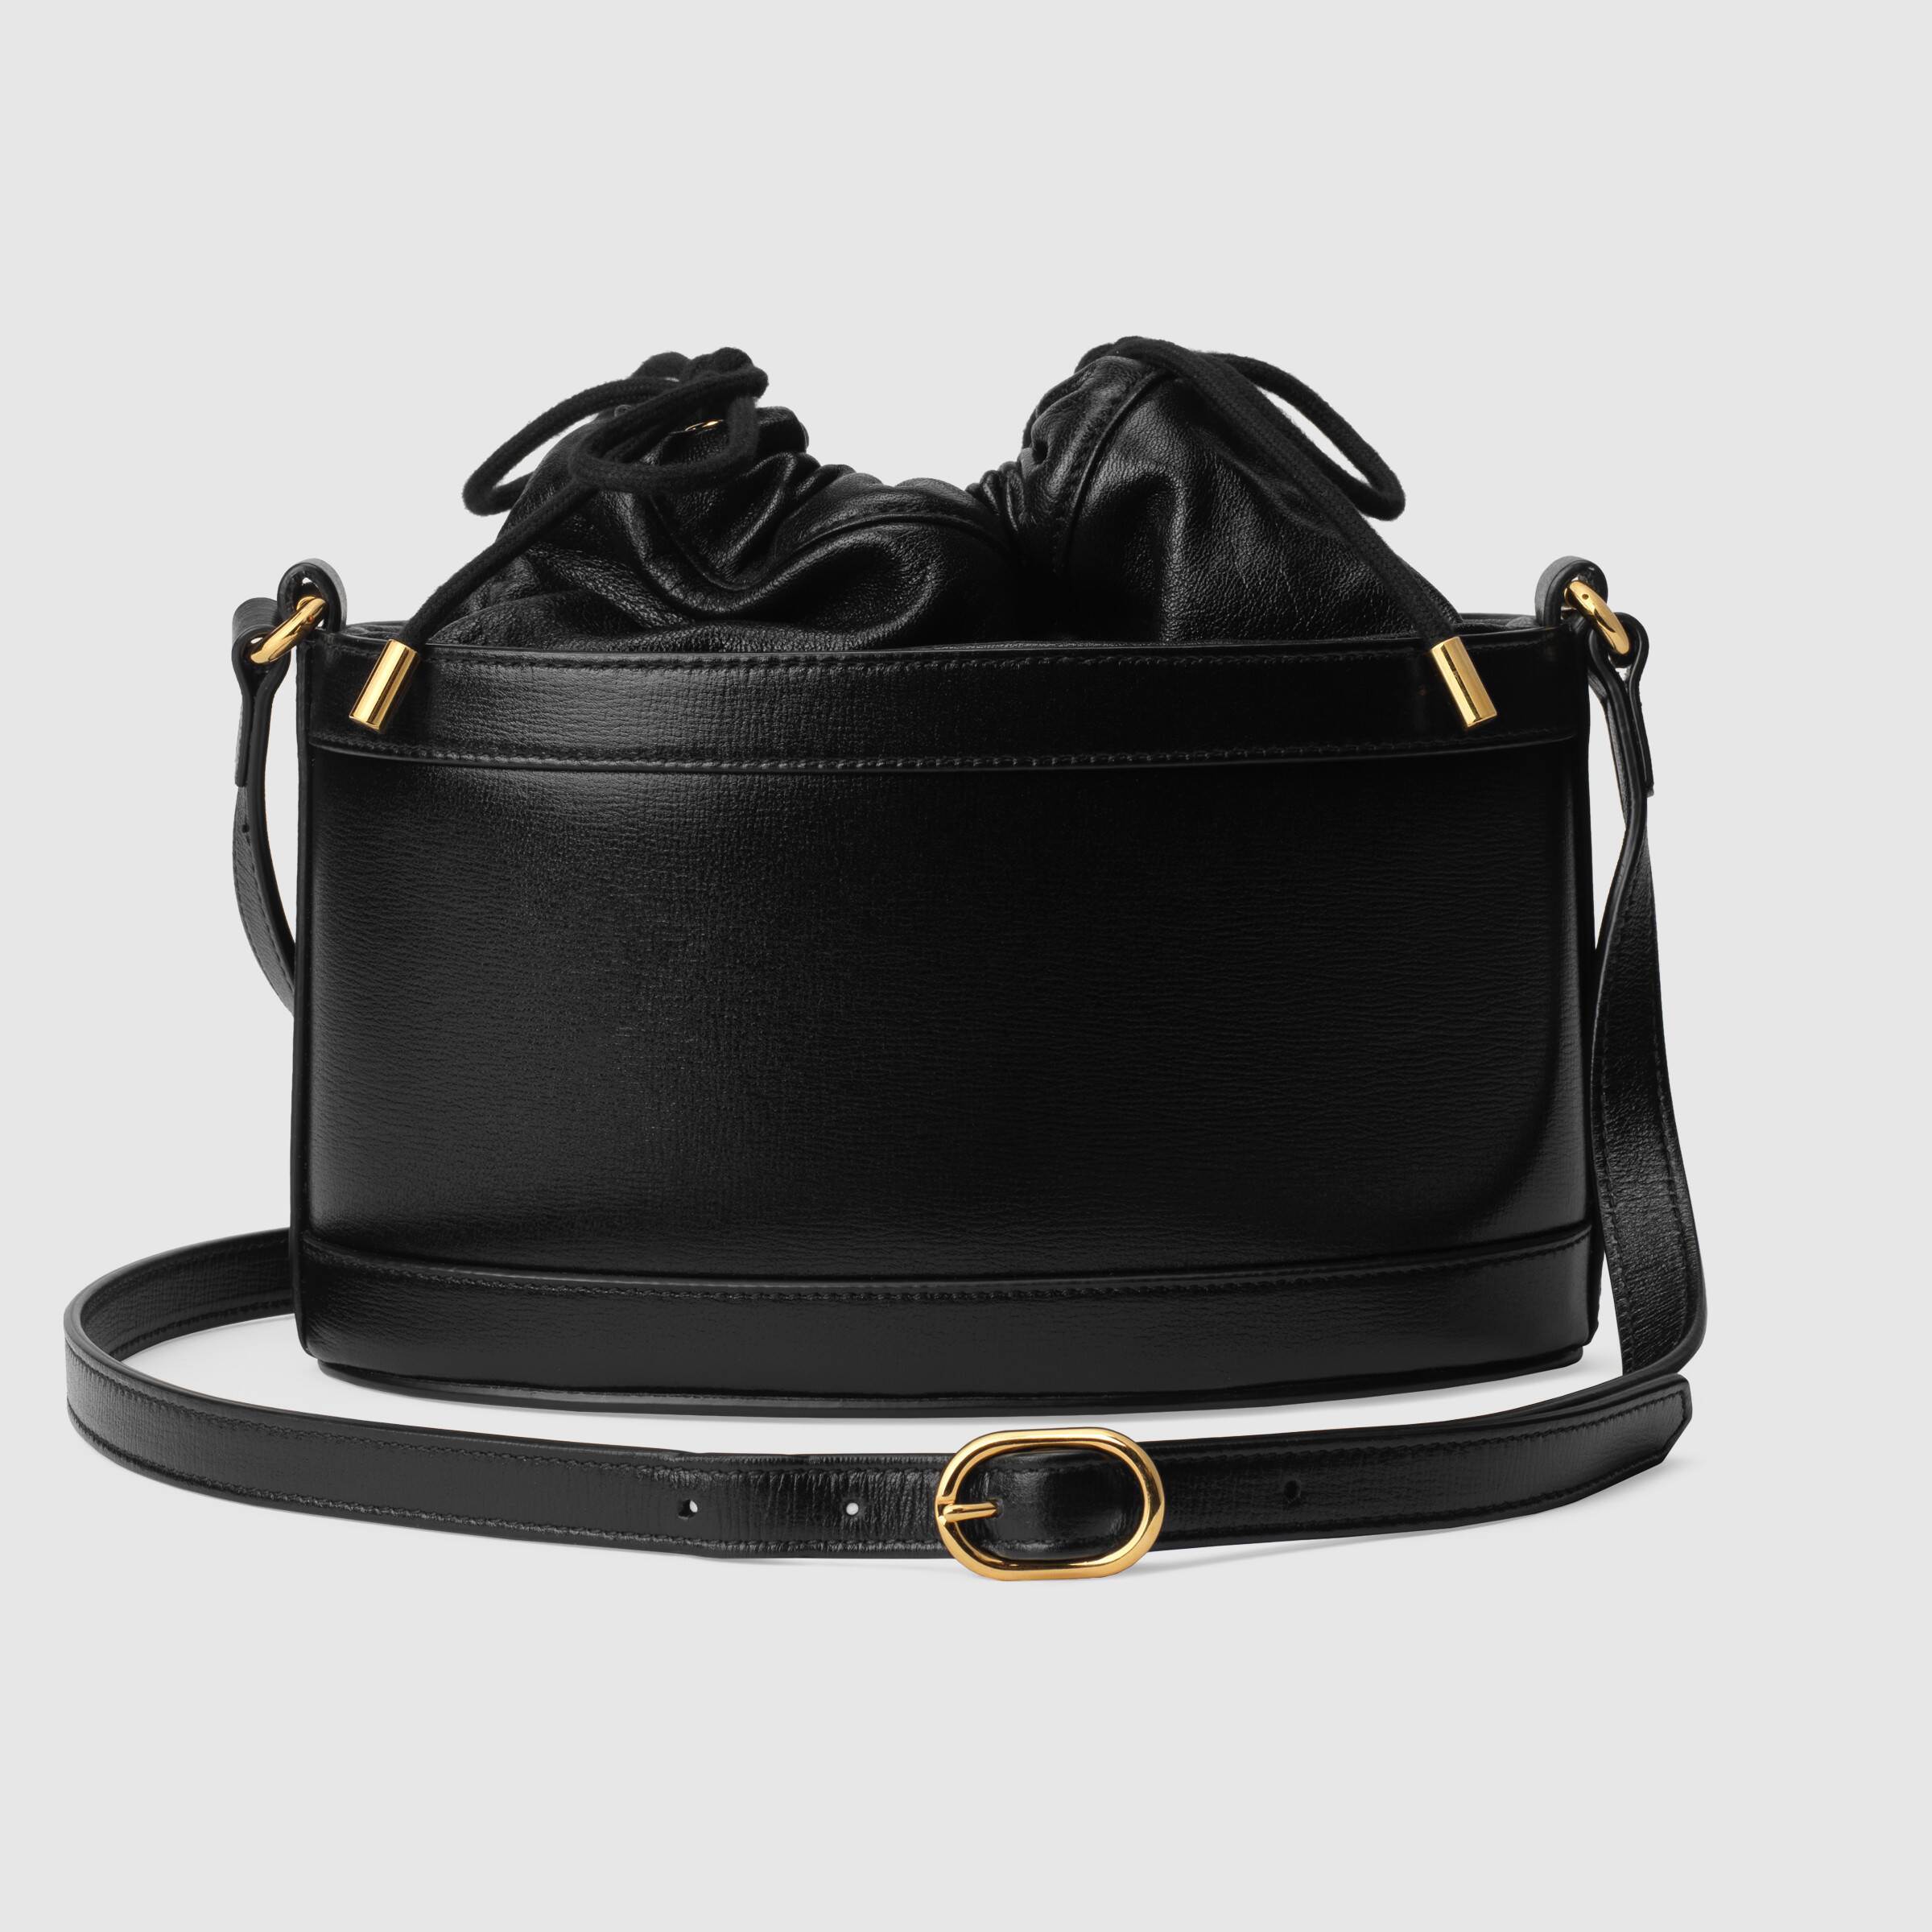 Gucci 1955 Horsebit Bucket Bag Black